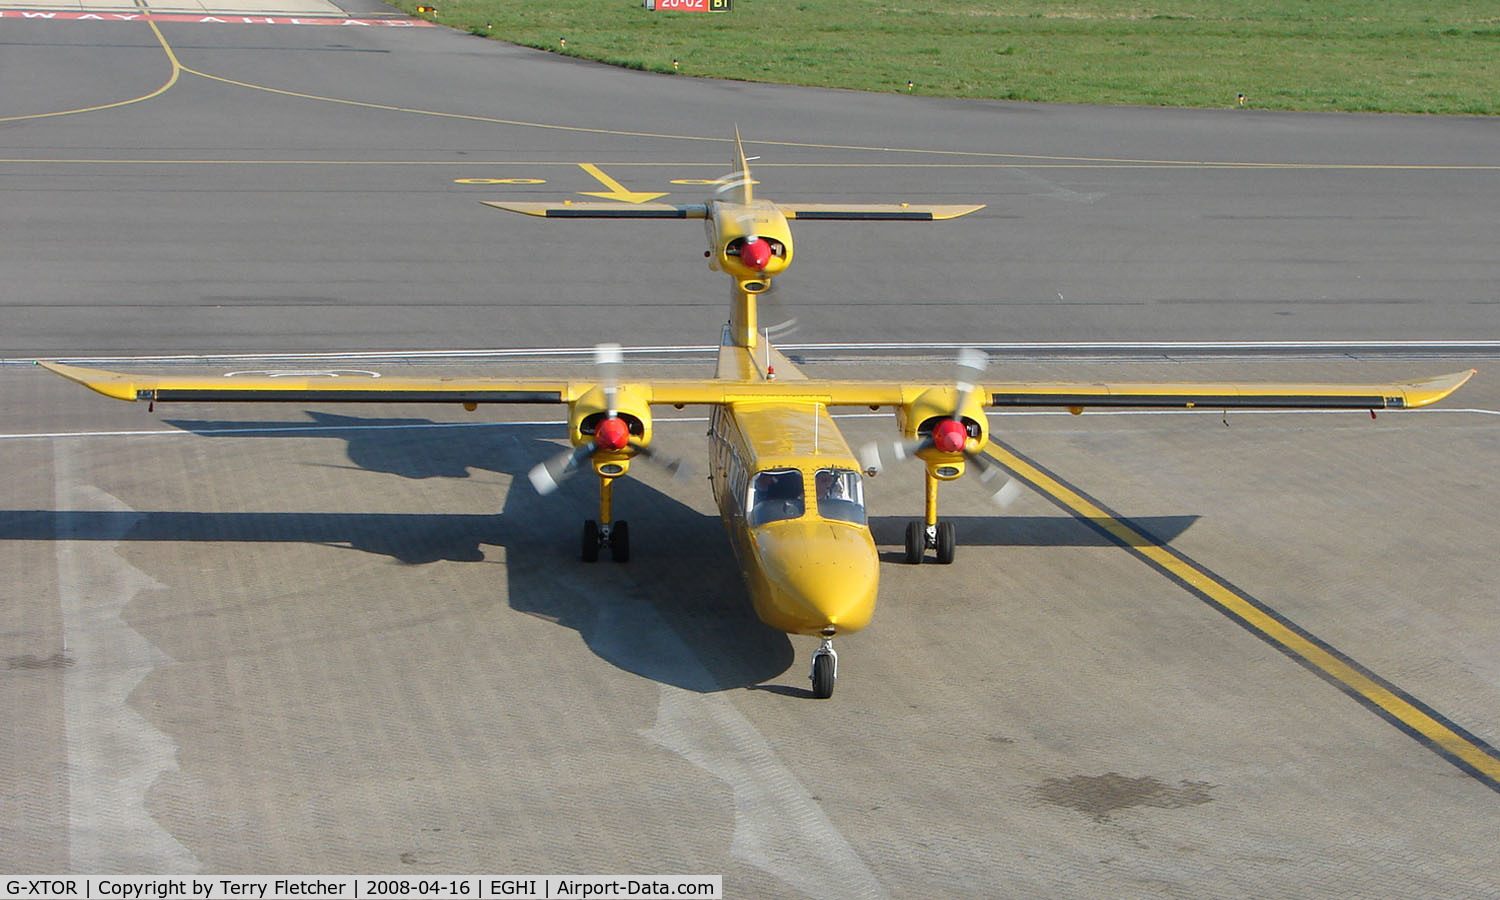 G-XTOR, 1973 Britten-Norman BN-2A Mk.III-2 Trislander C/N 359, First Trislander I have seen for many a year